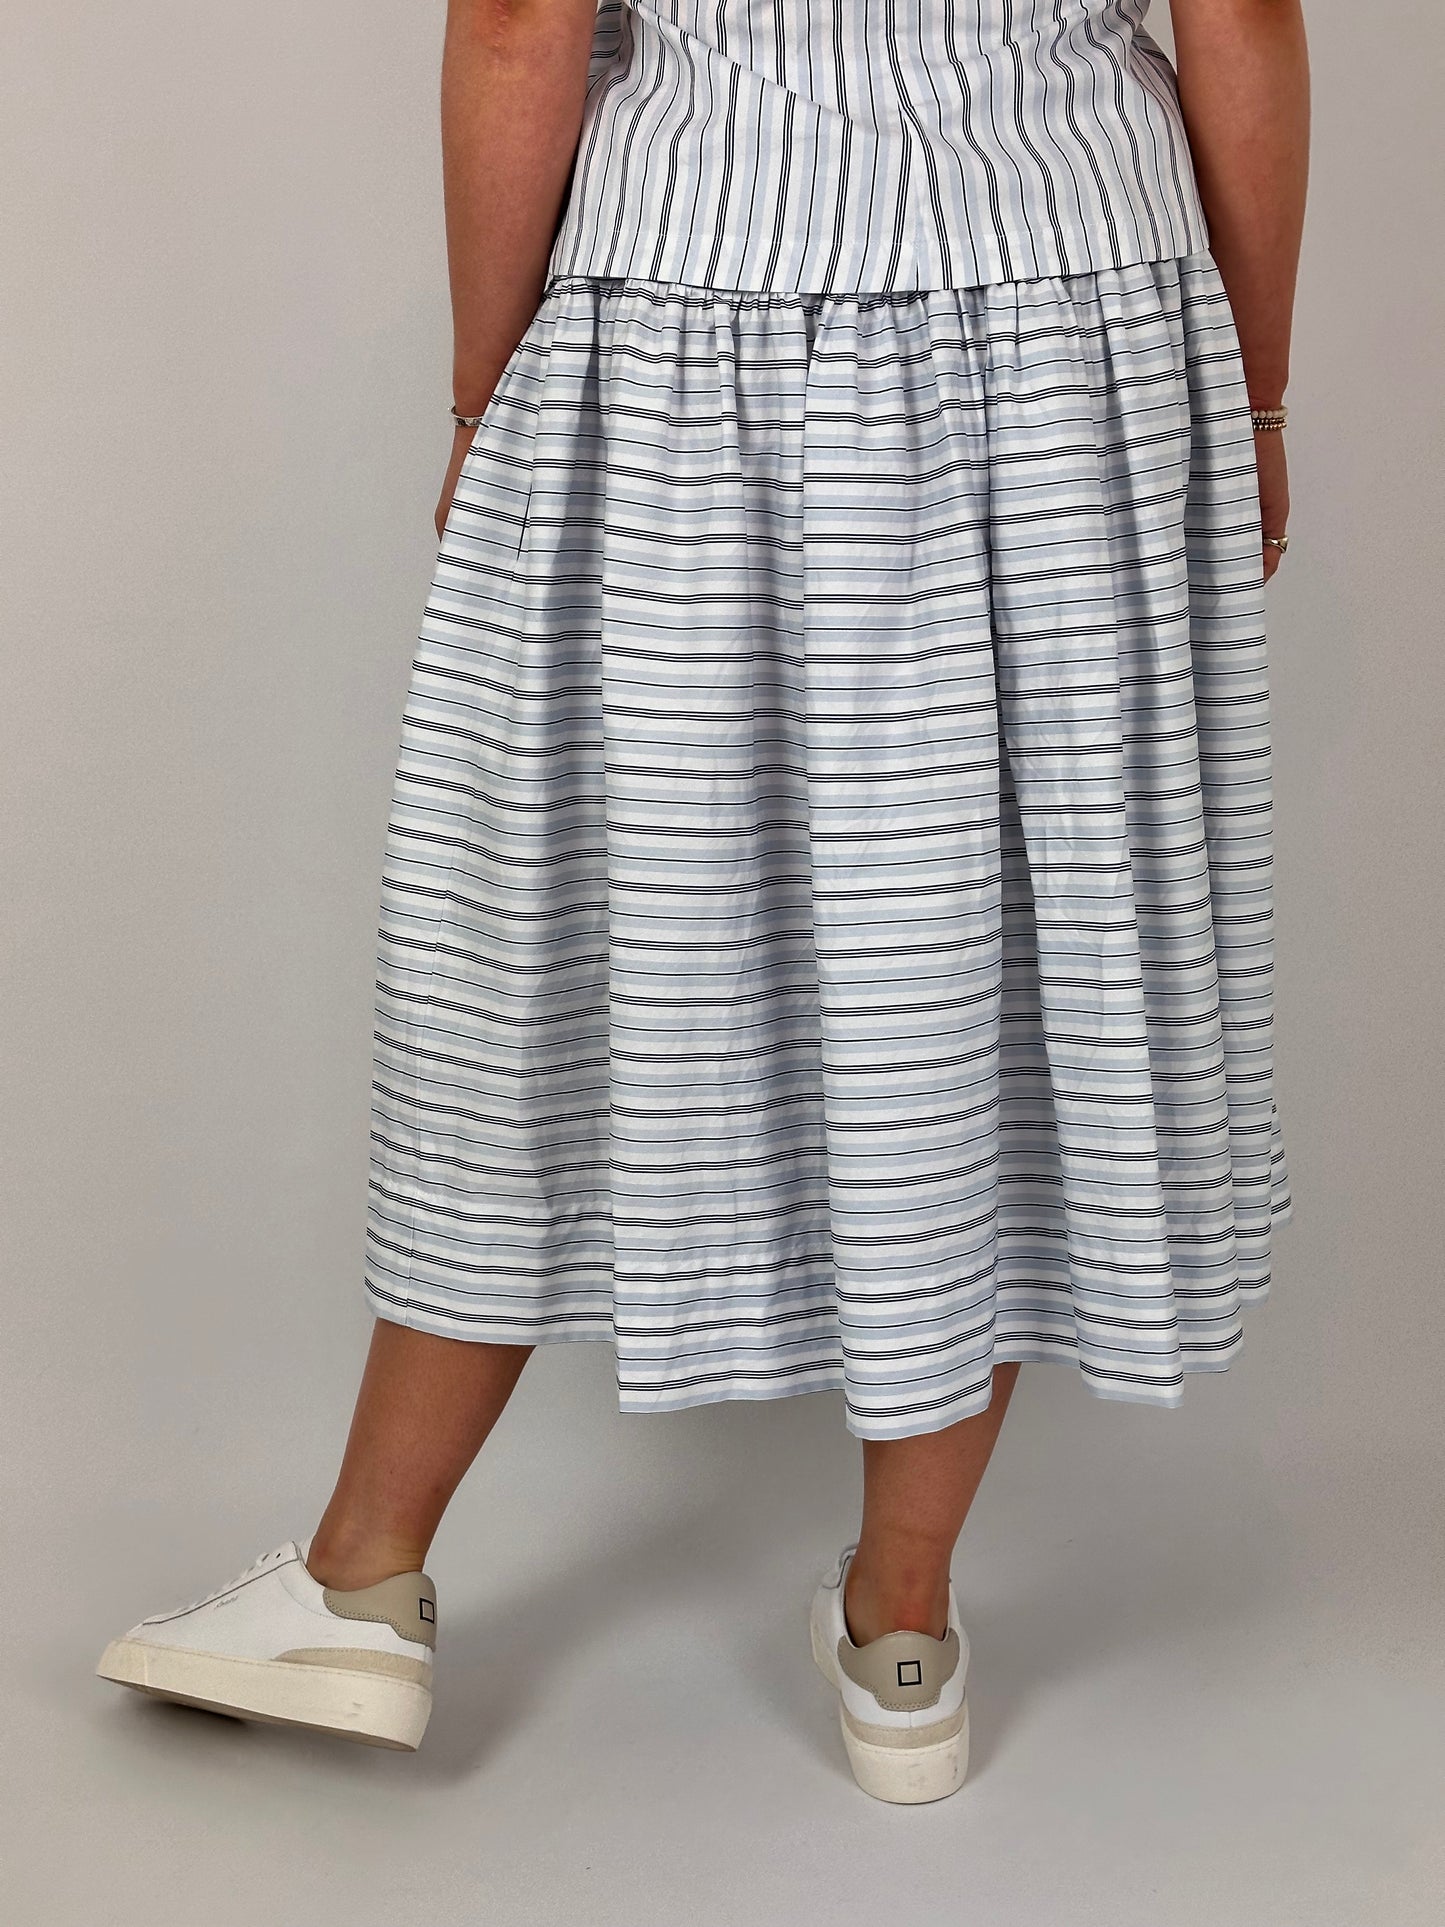 LFDA 615 Skirt Stripes